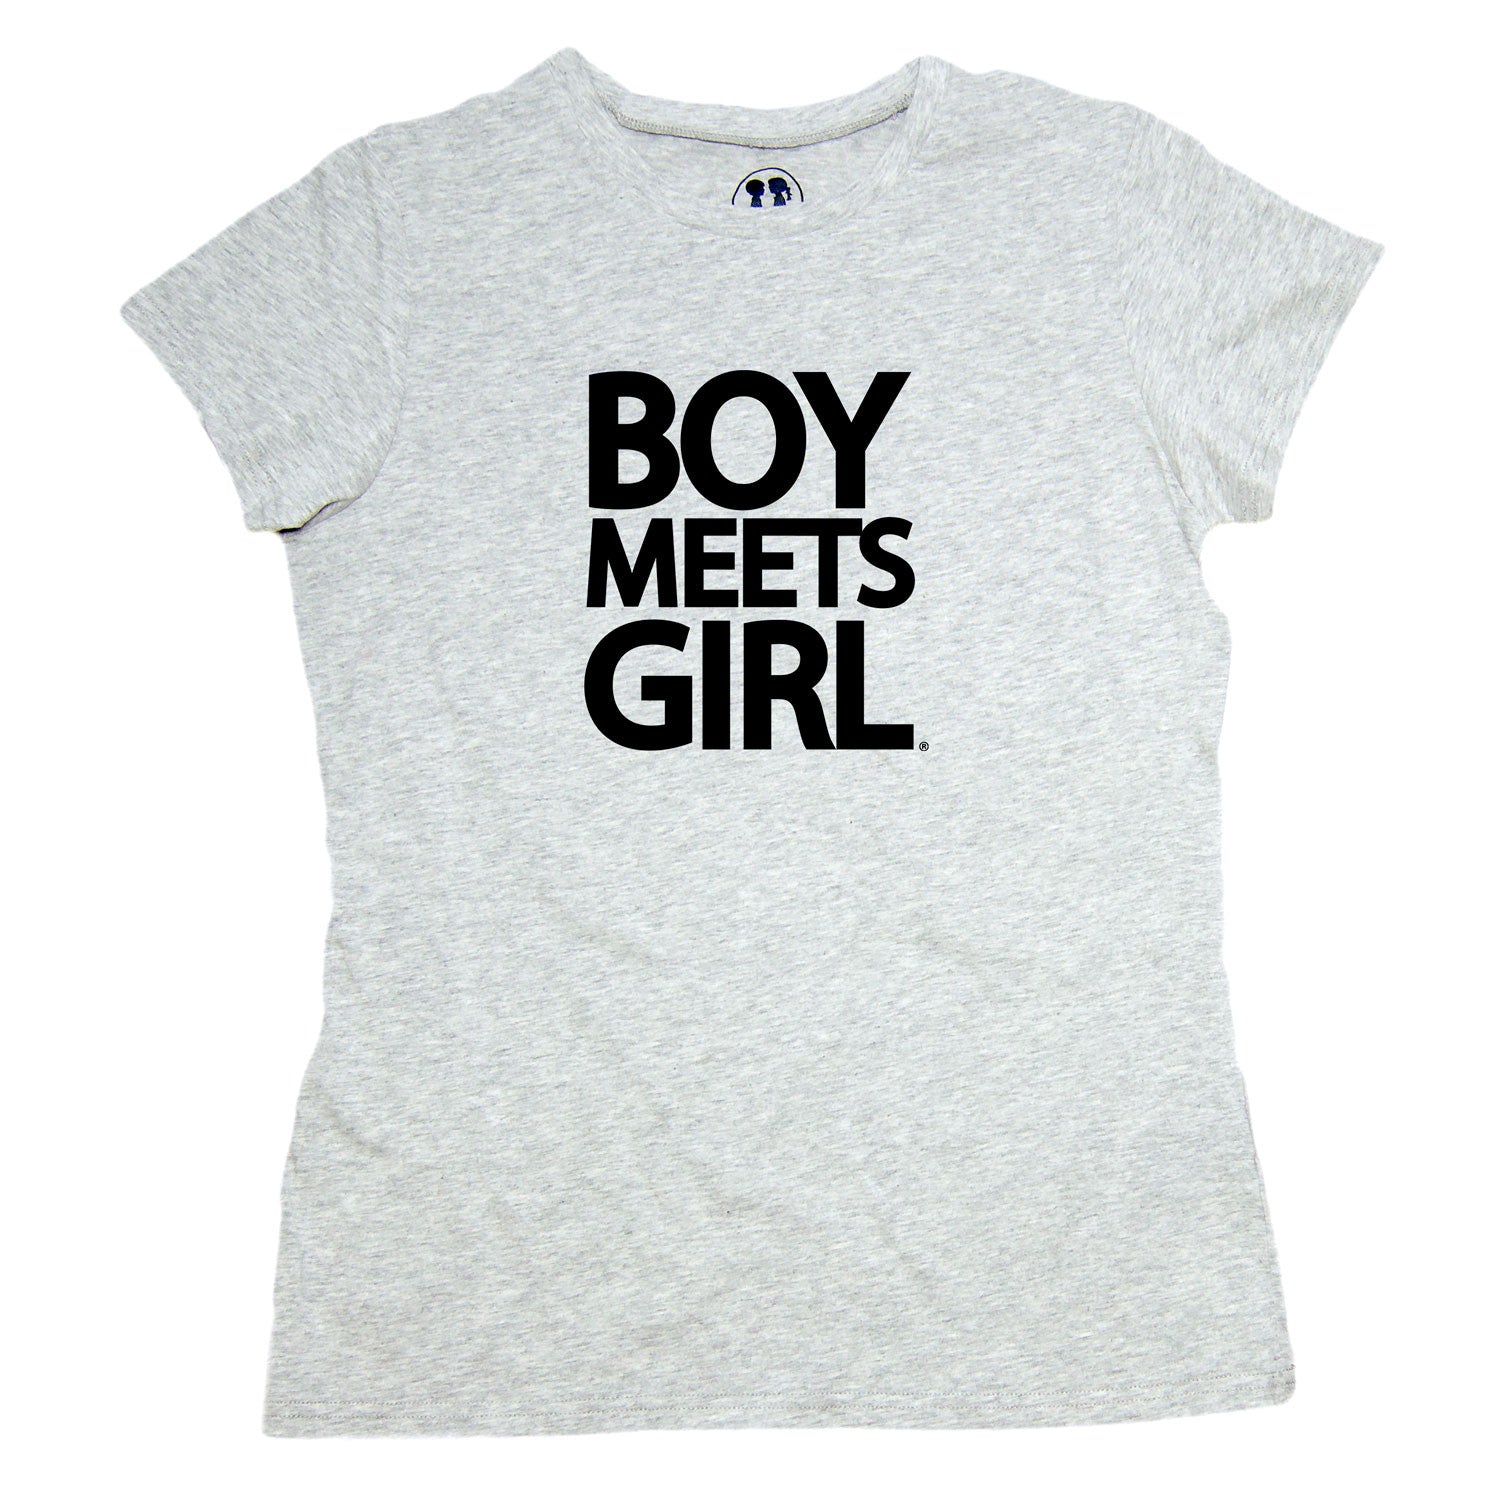 Boy Meets Girl Tee (Crew Neck) by BOY MEETS GIRL USA